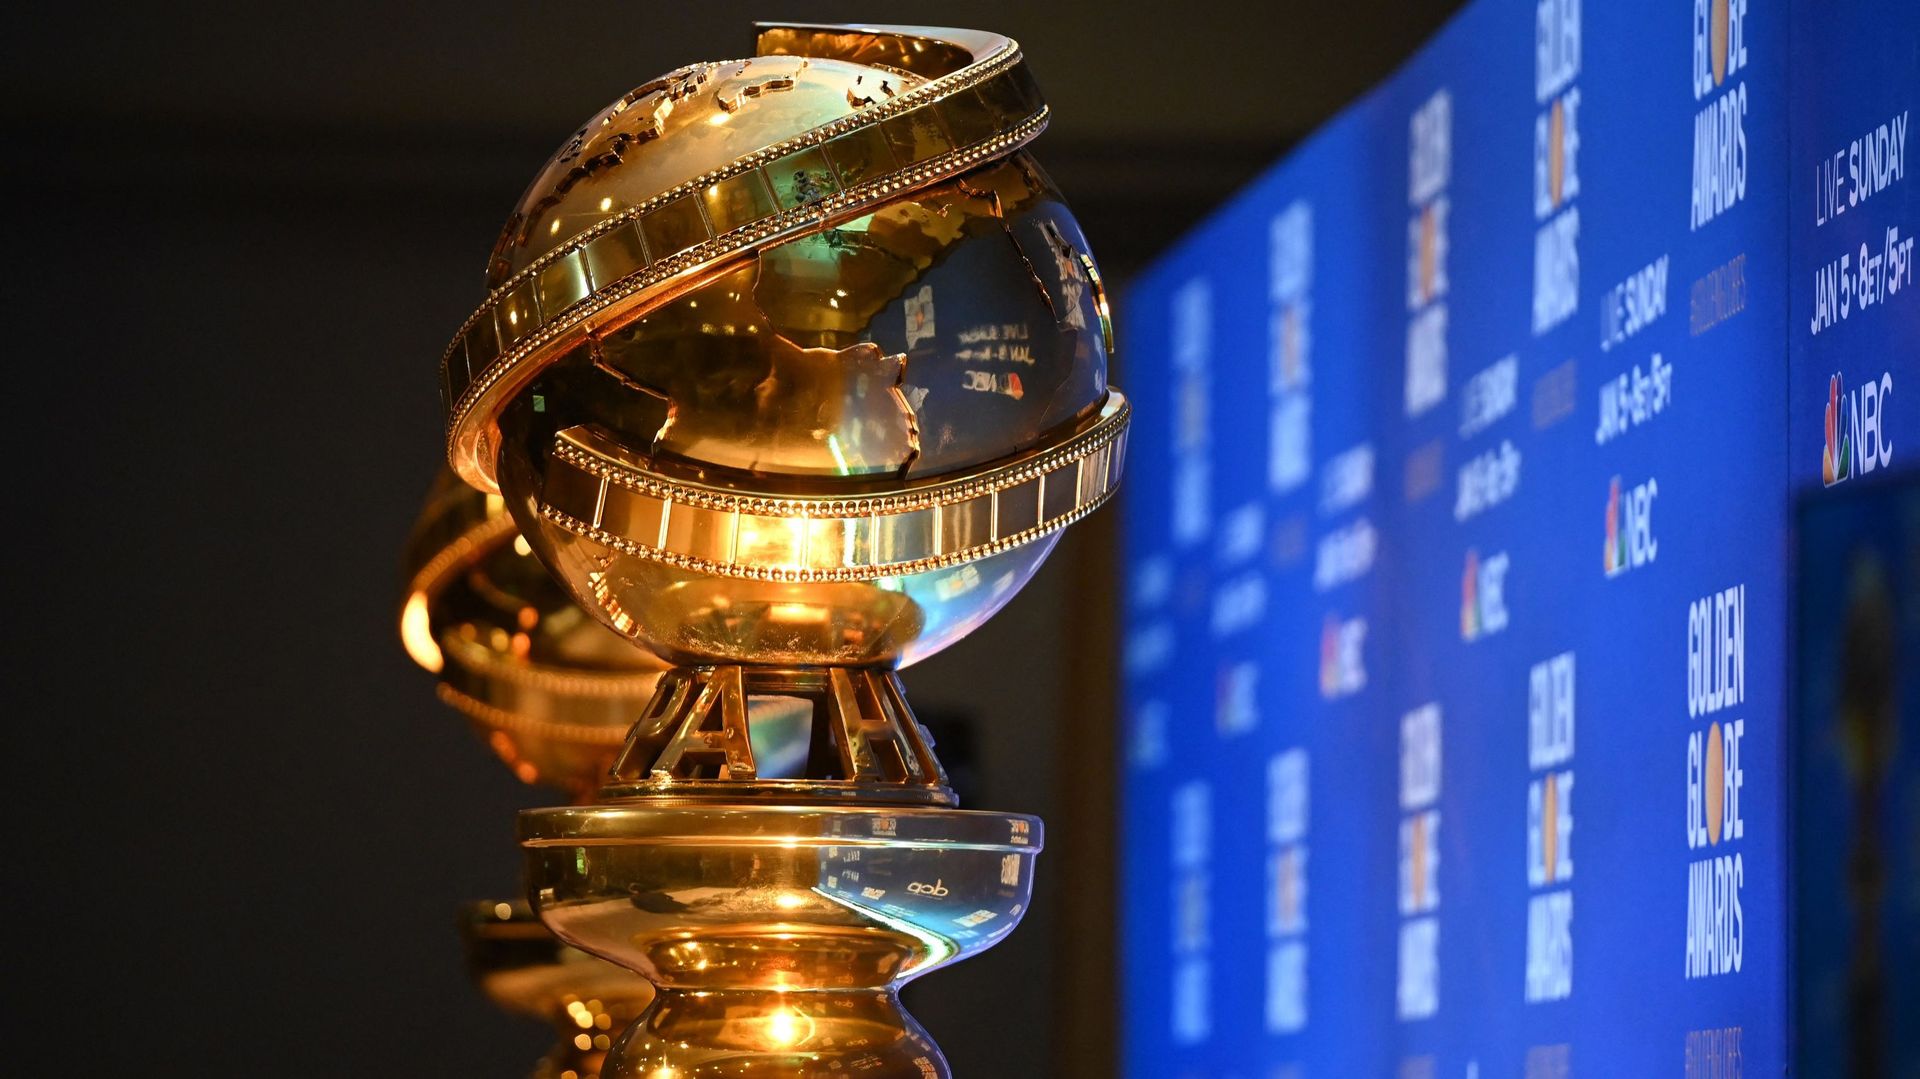 L'organisation qui attribue les prestigieux prix des Golden Globes a adopté jeudi une série de réformes pour améliorer sa représentativité.